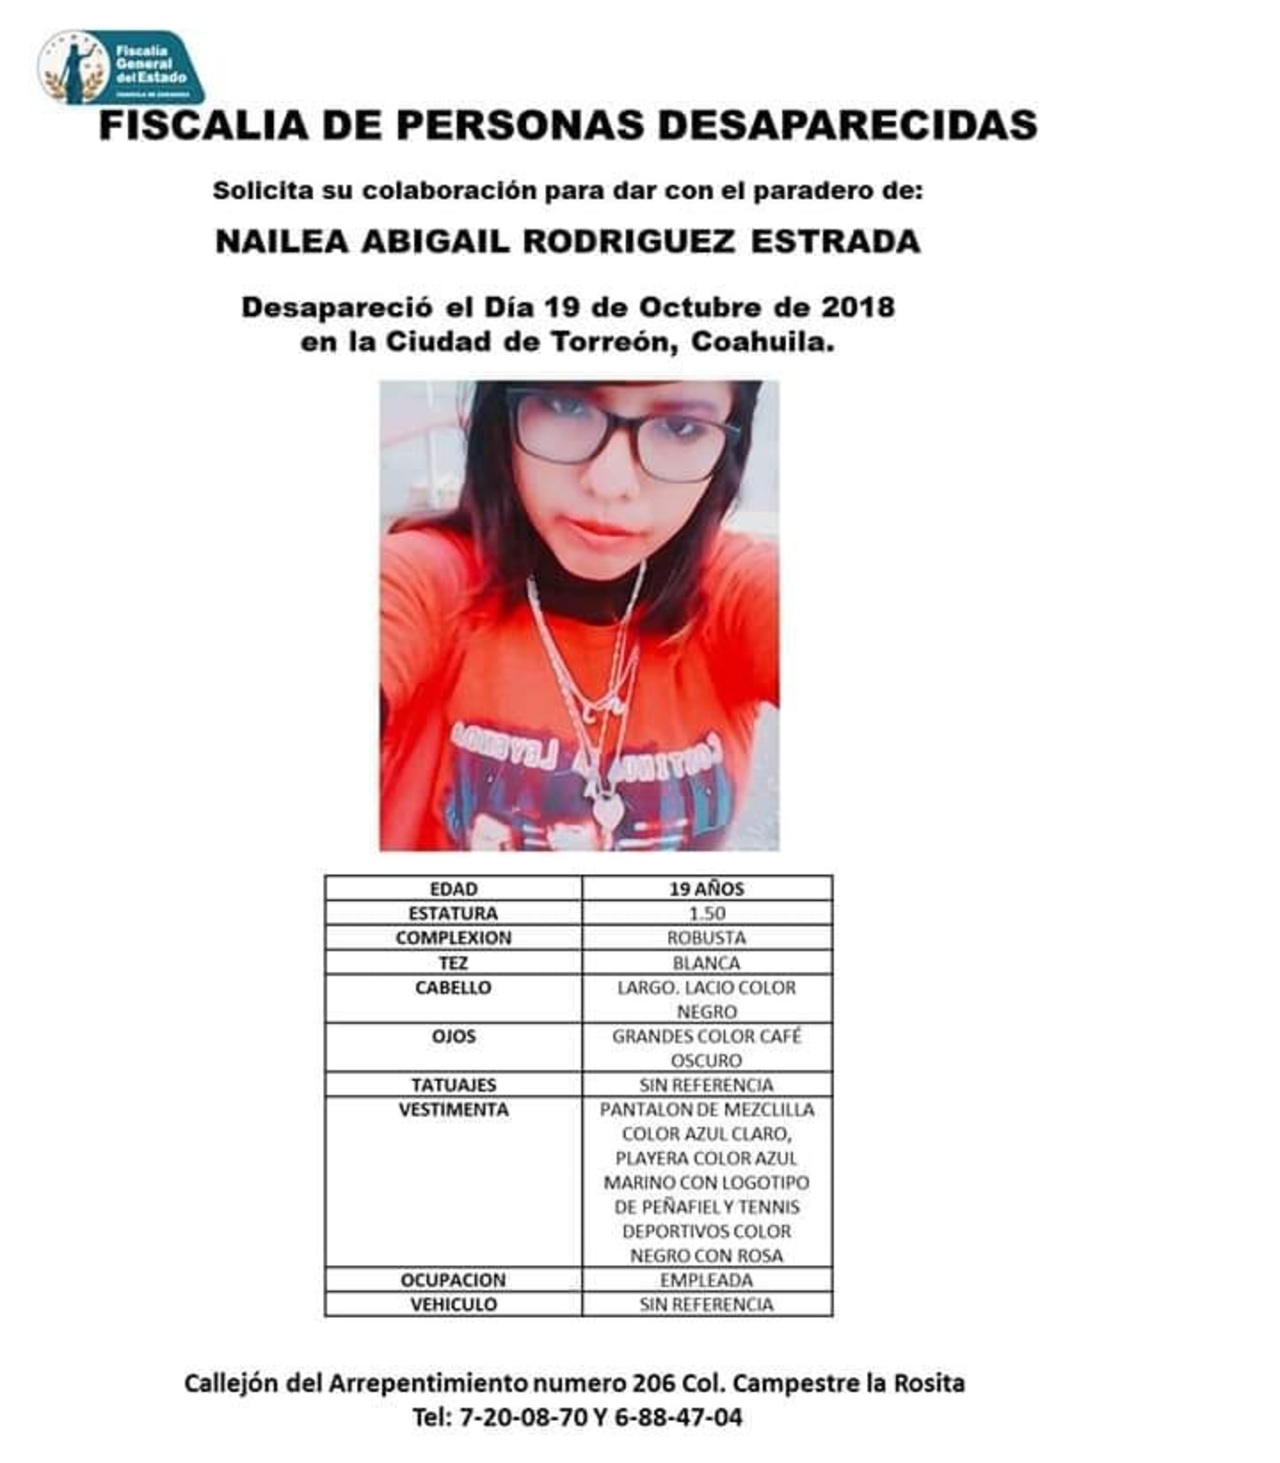 Hallan cuerpo sin vida de joven desaparecida en Torreón